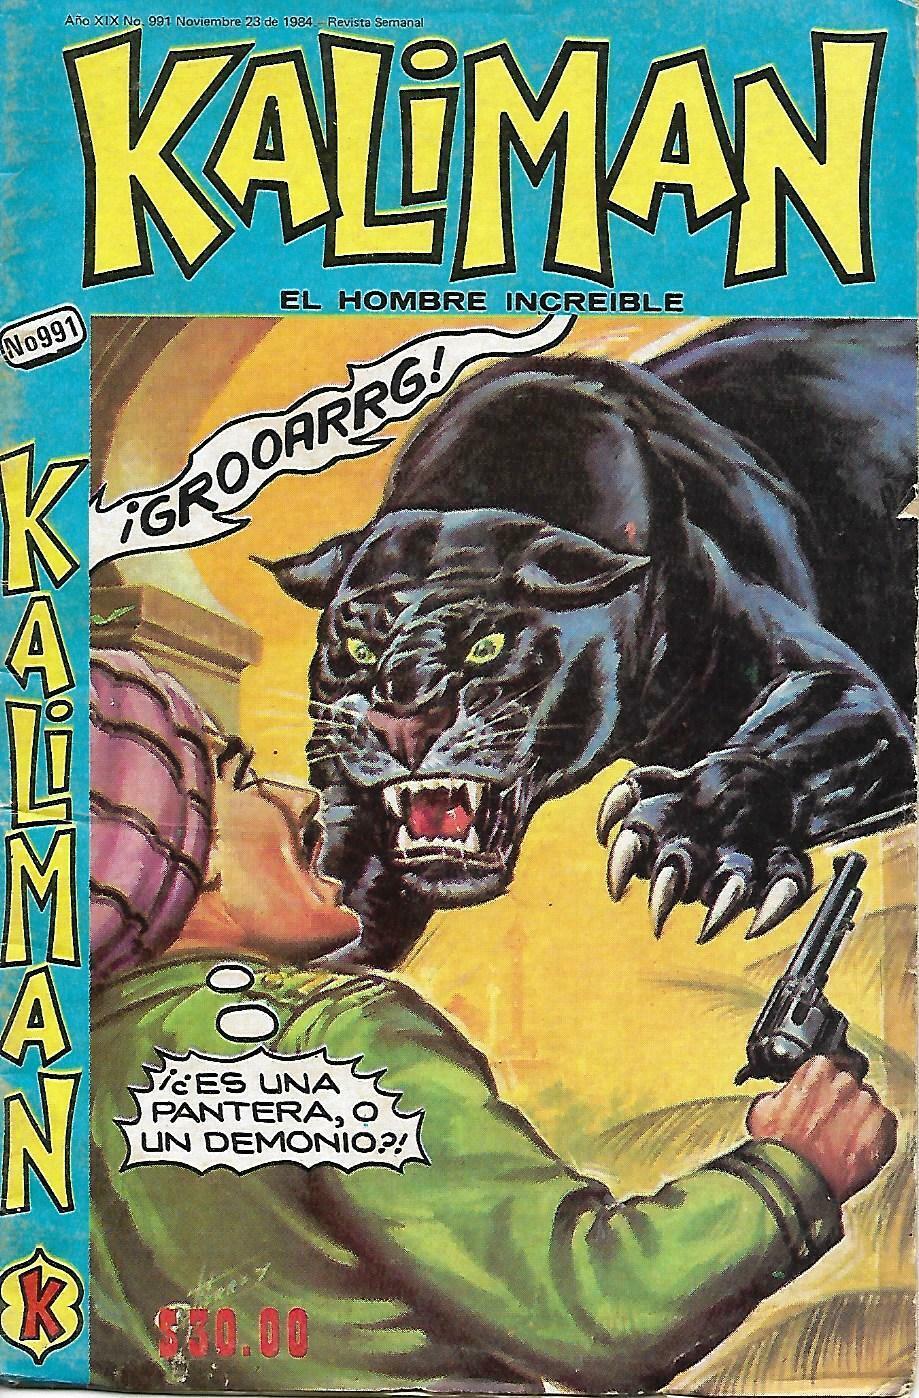 Kaliman El Hombre Increible #991 - Noviembre 23, 1984 - Mexico 